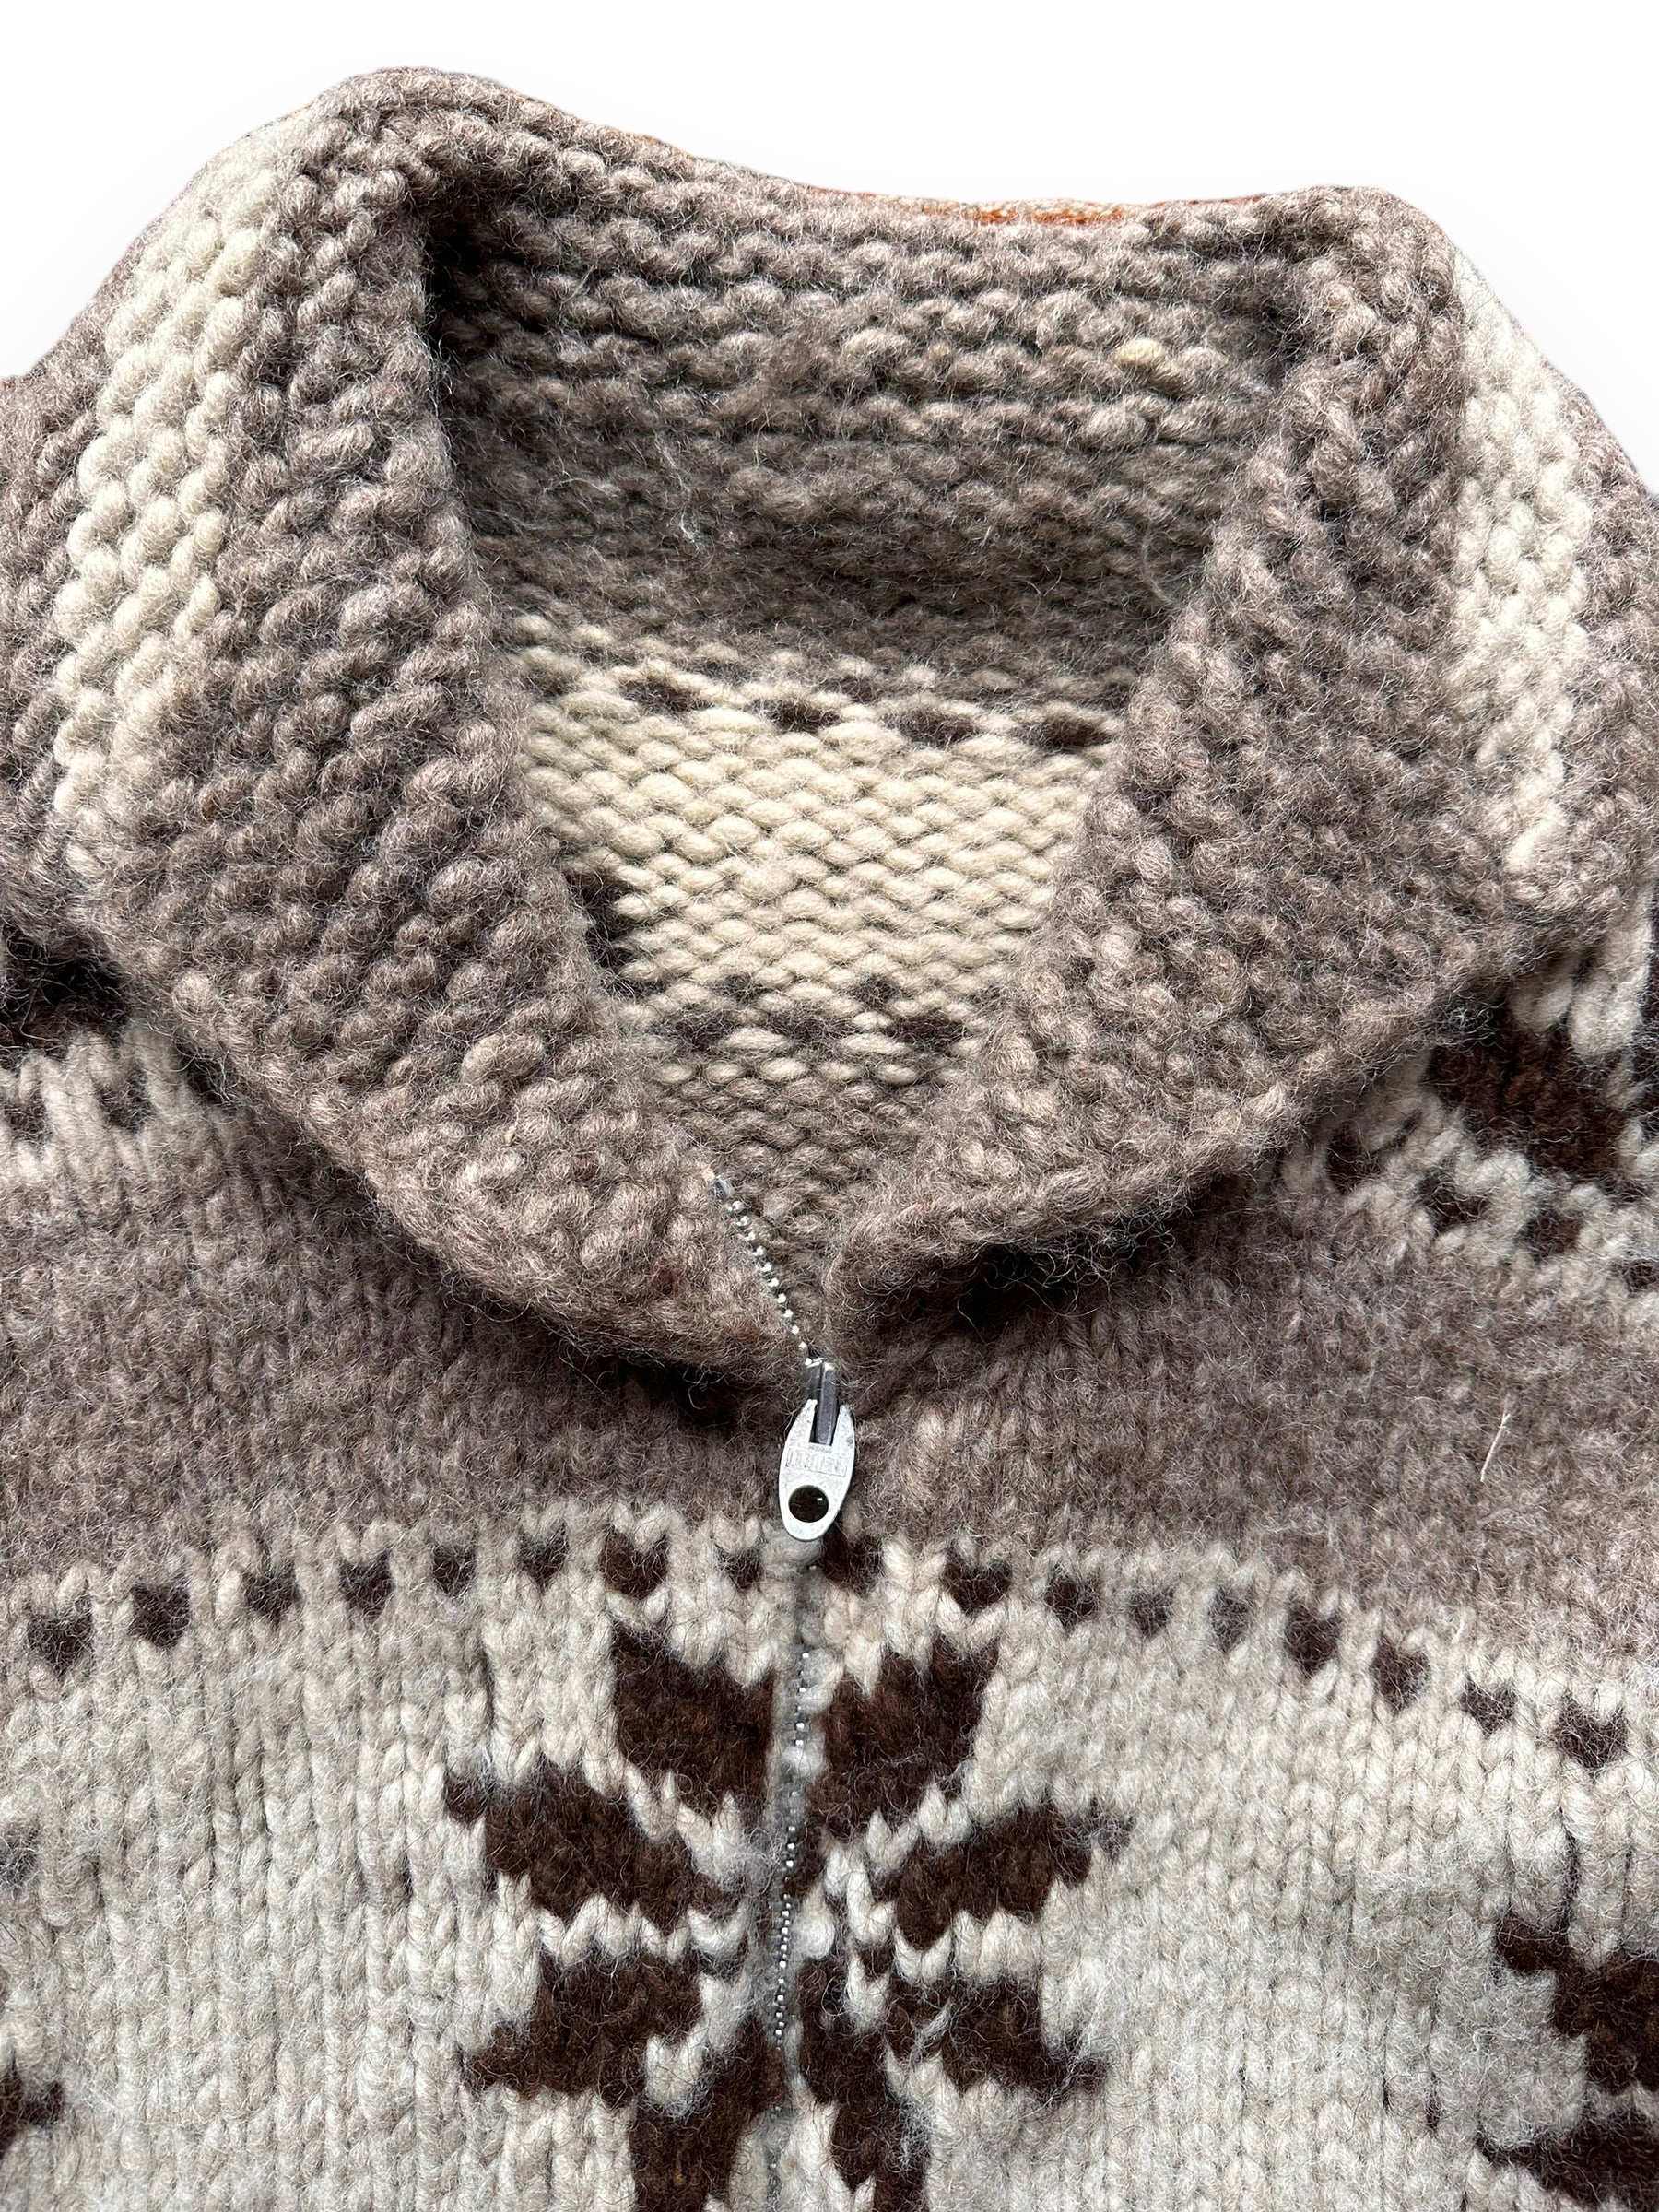 collar of Vintage Wool Cowichan Sweater SZ XL |  Vintage Cowichan Sweaters Seattle | Barn Owl Vintage Seattle